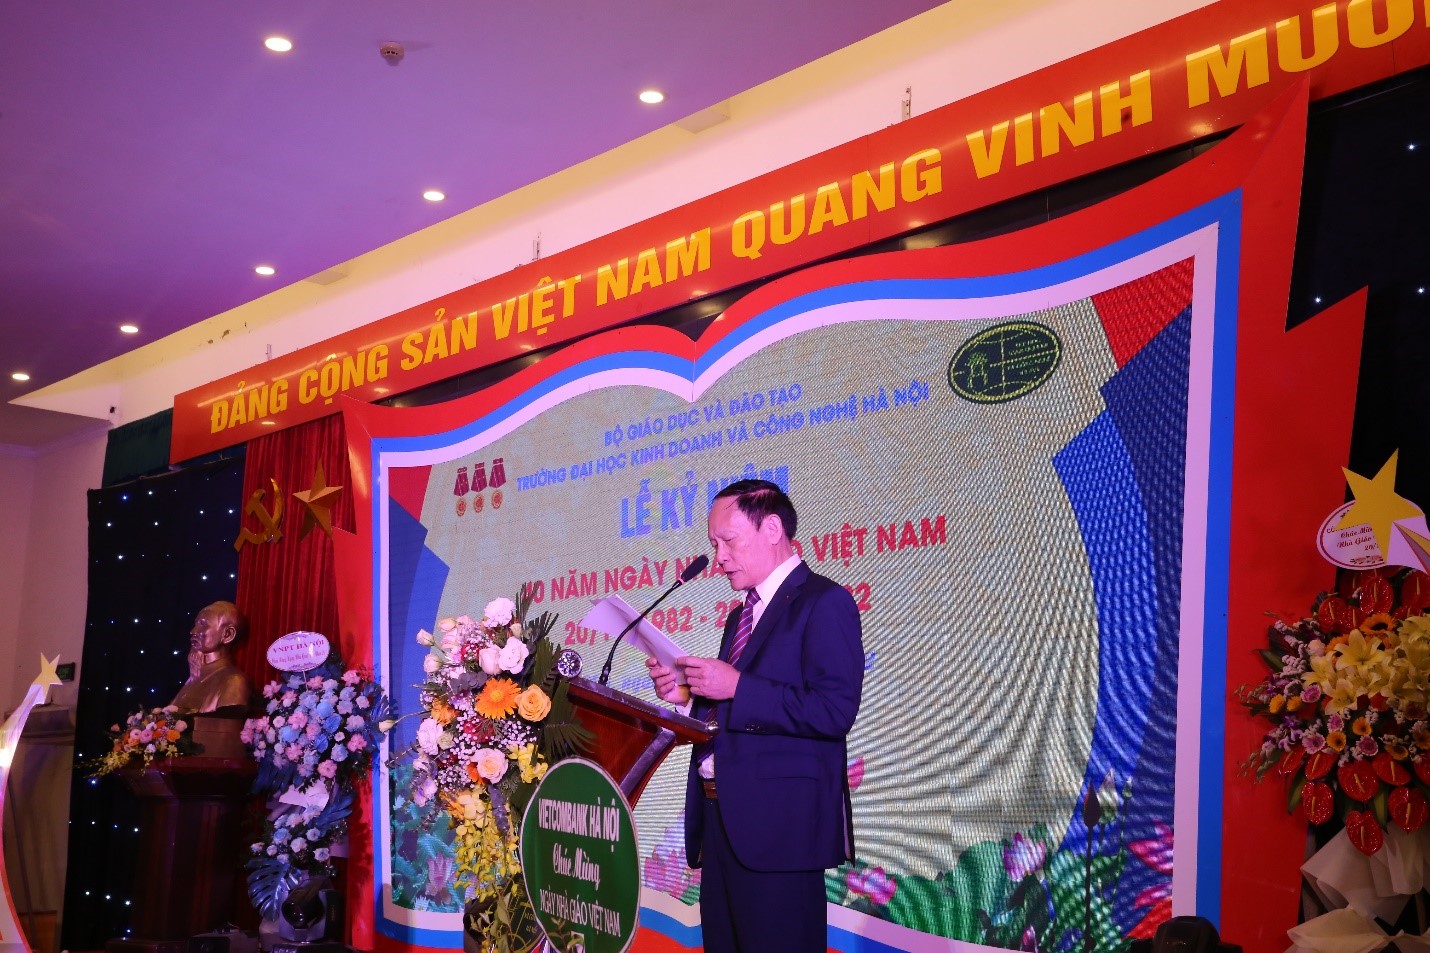 TS Nguyễn Công Nghiệp, Bí thư Đảng ủy, Phó Hiệu trưởng Thường trực Nhà trường phát biểu tại buổi lễ.